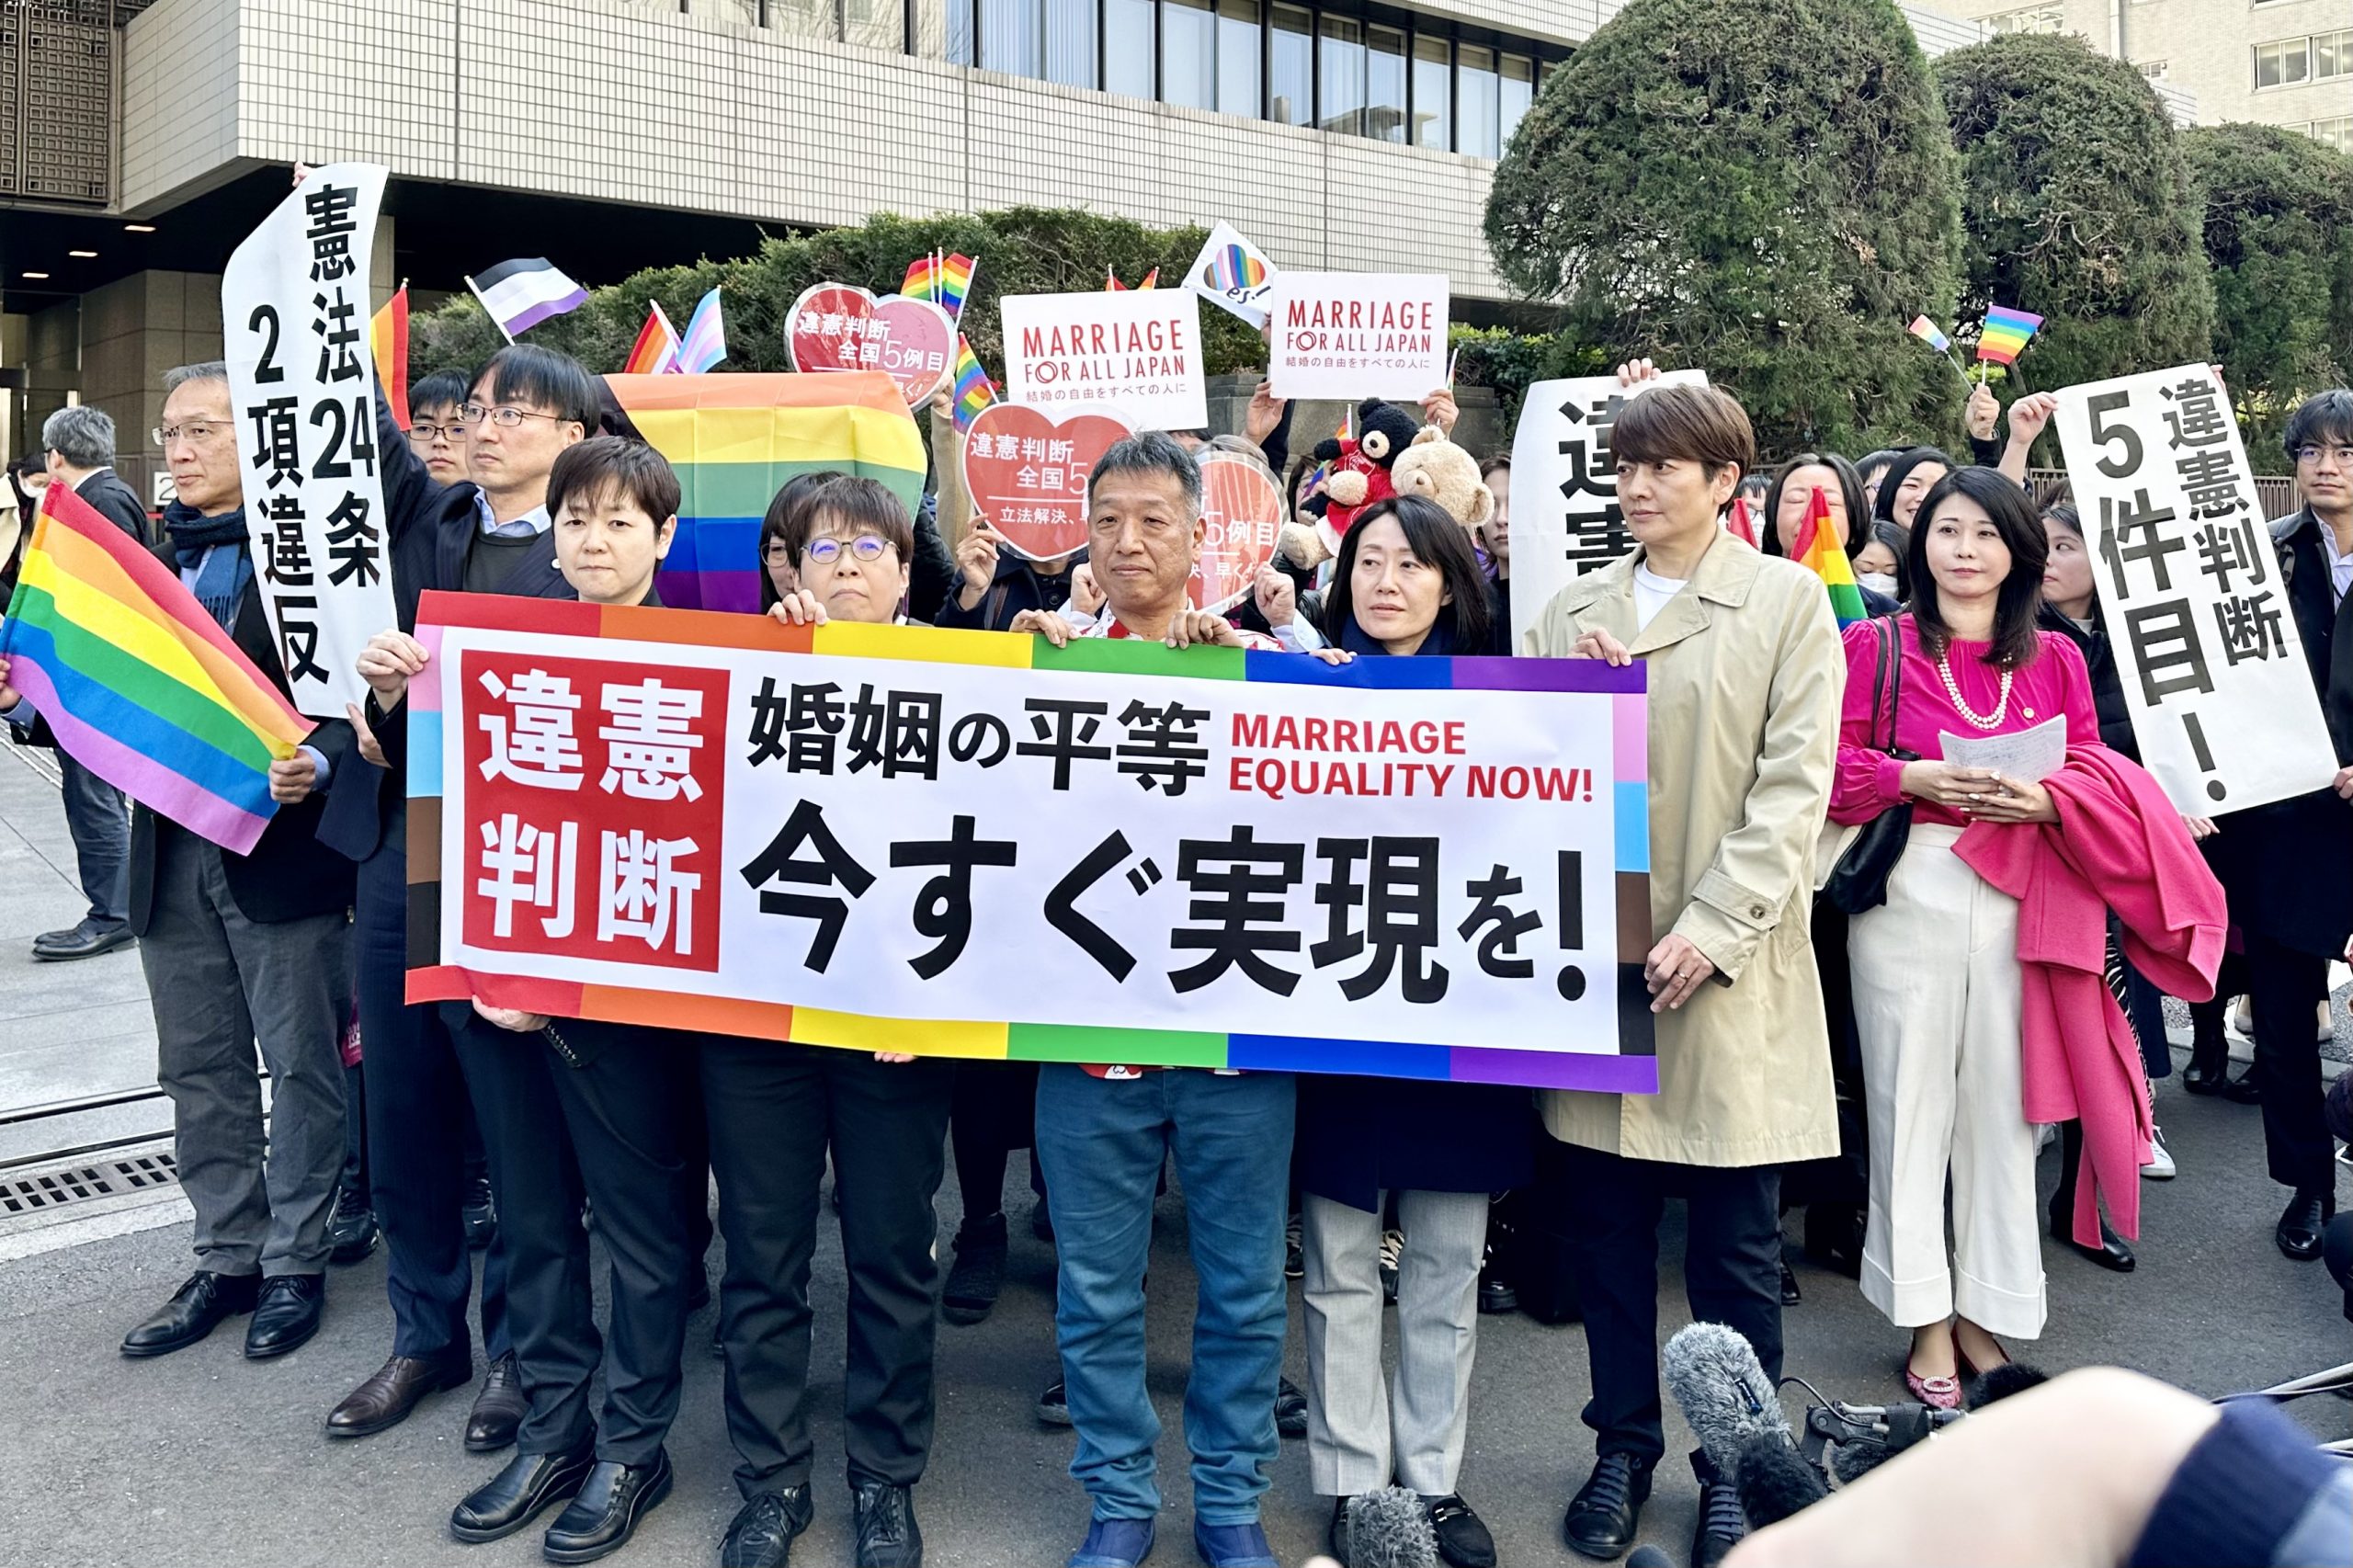 「結婚の自由をすべての人に」東京第二次訴訟 東京地裁判決後の旗出し風景。原告らが掲げる旗には「違憲判断 婚姻の平等 今すぐ実現を！ Marriage Equality Now」と書かれている